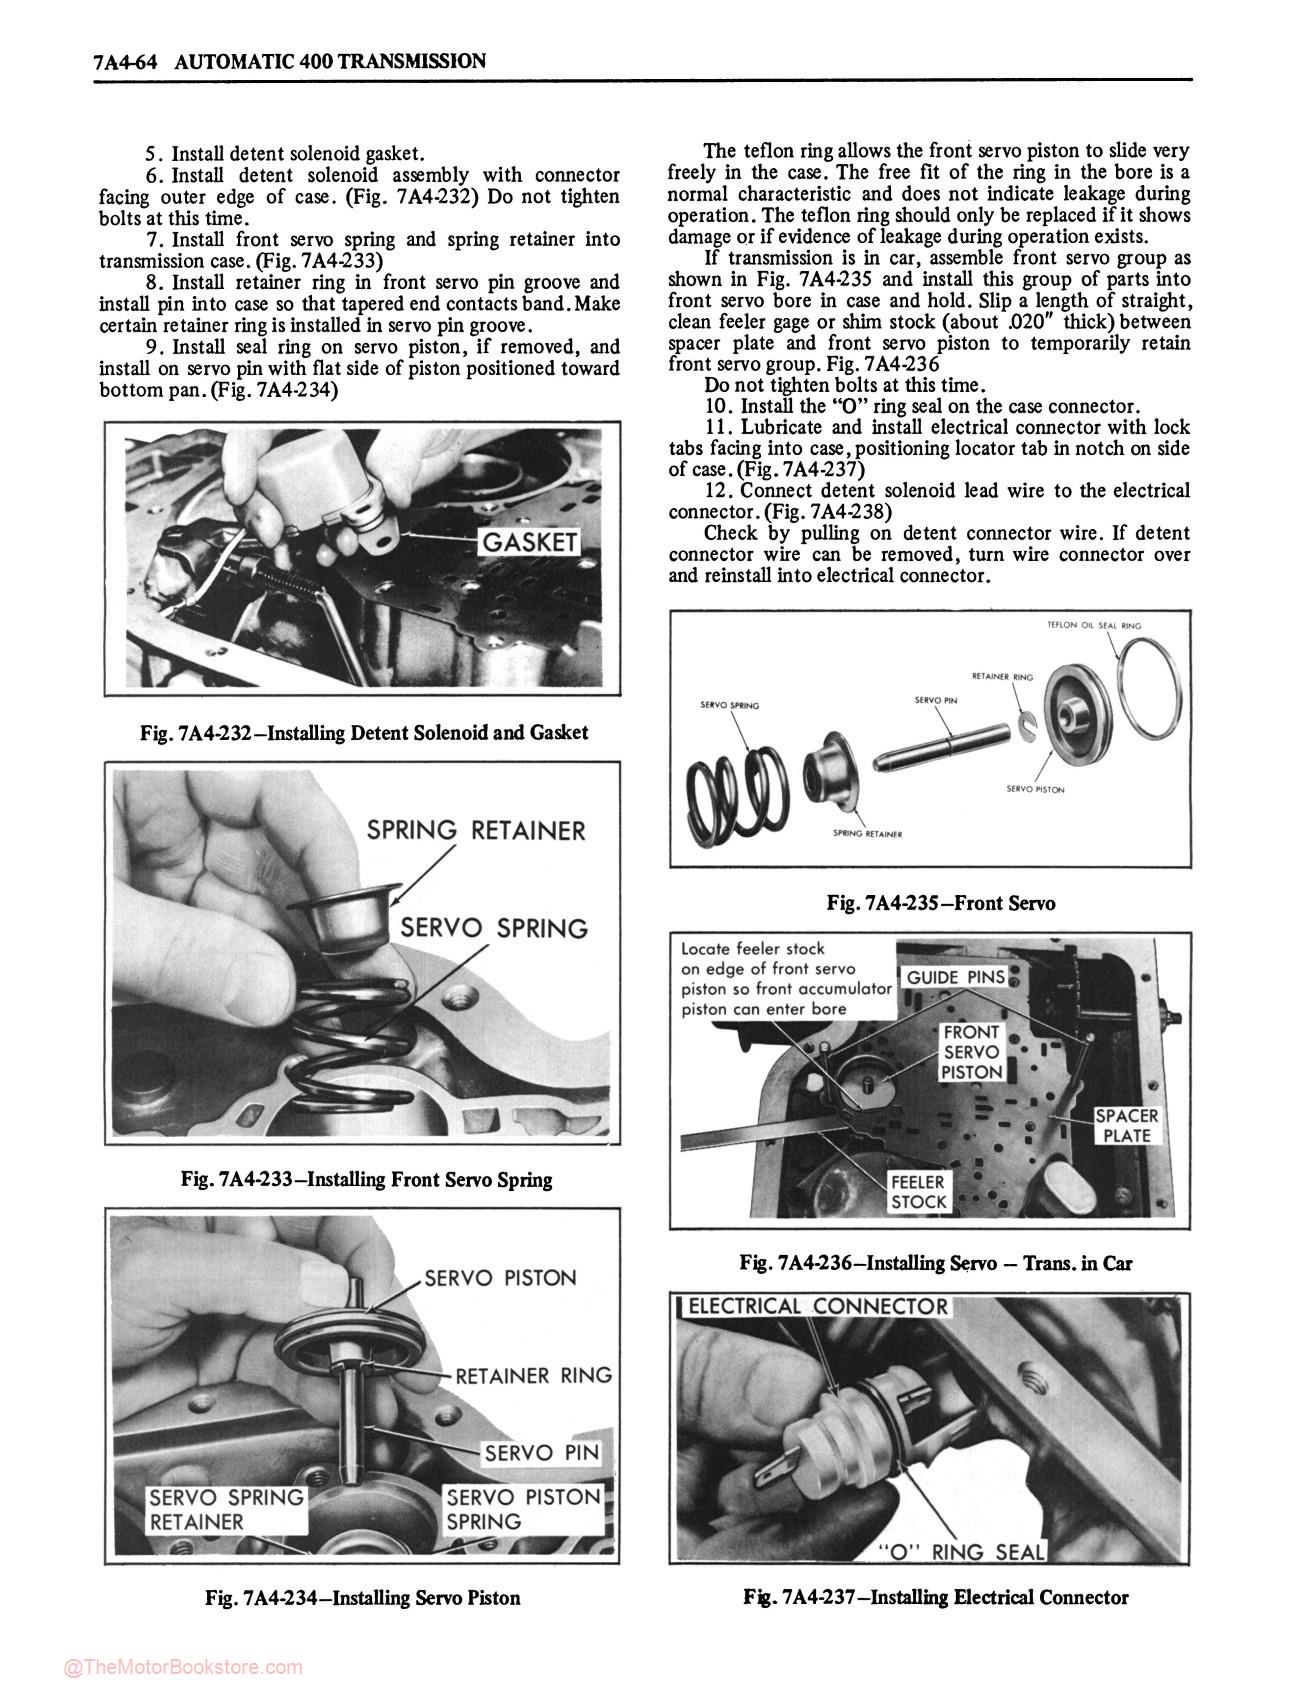 1980 Oldsmobile Service Repair Manual - Sample Page 2